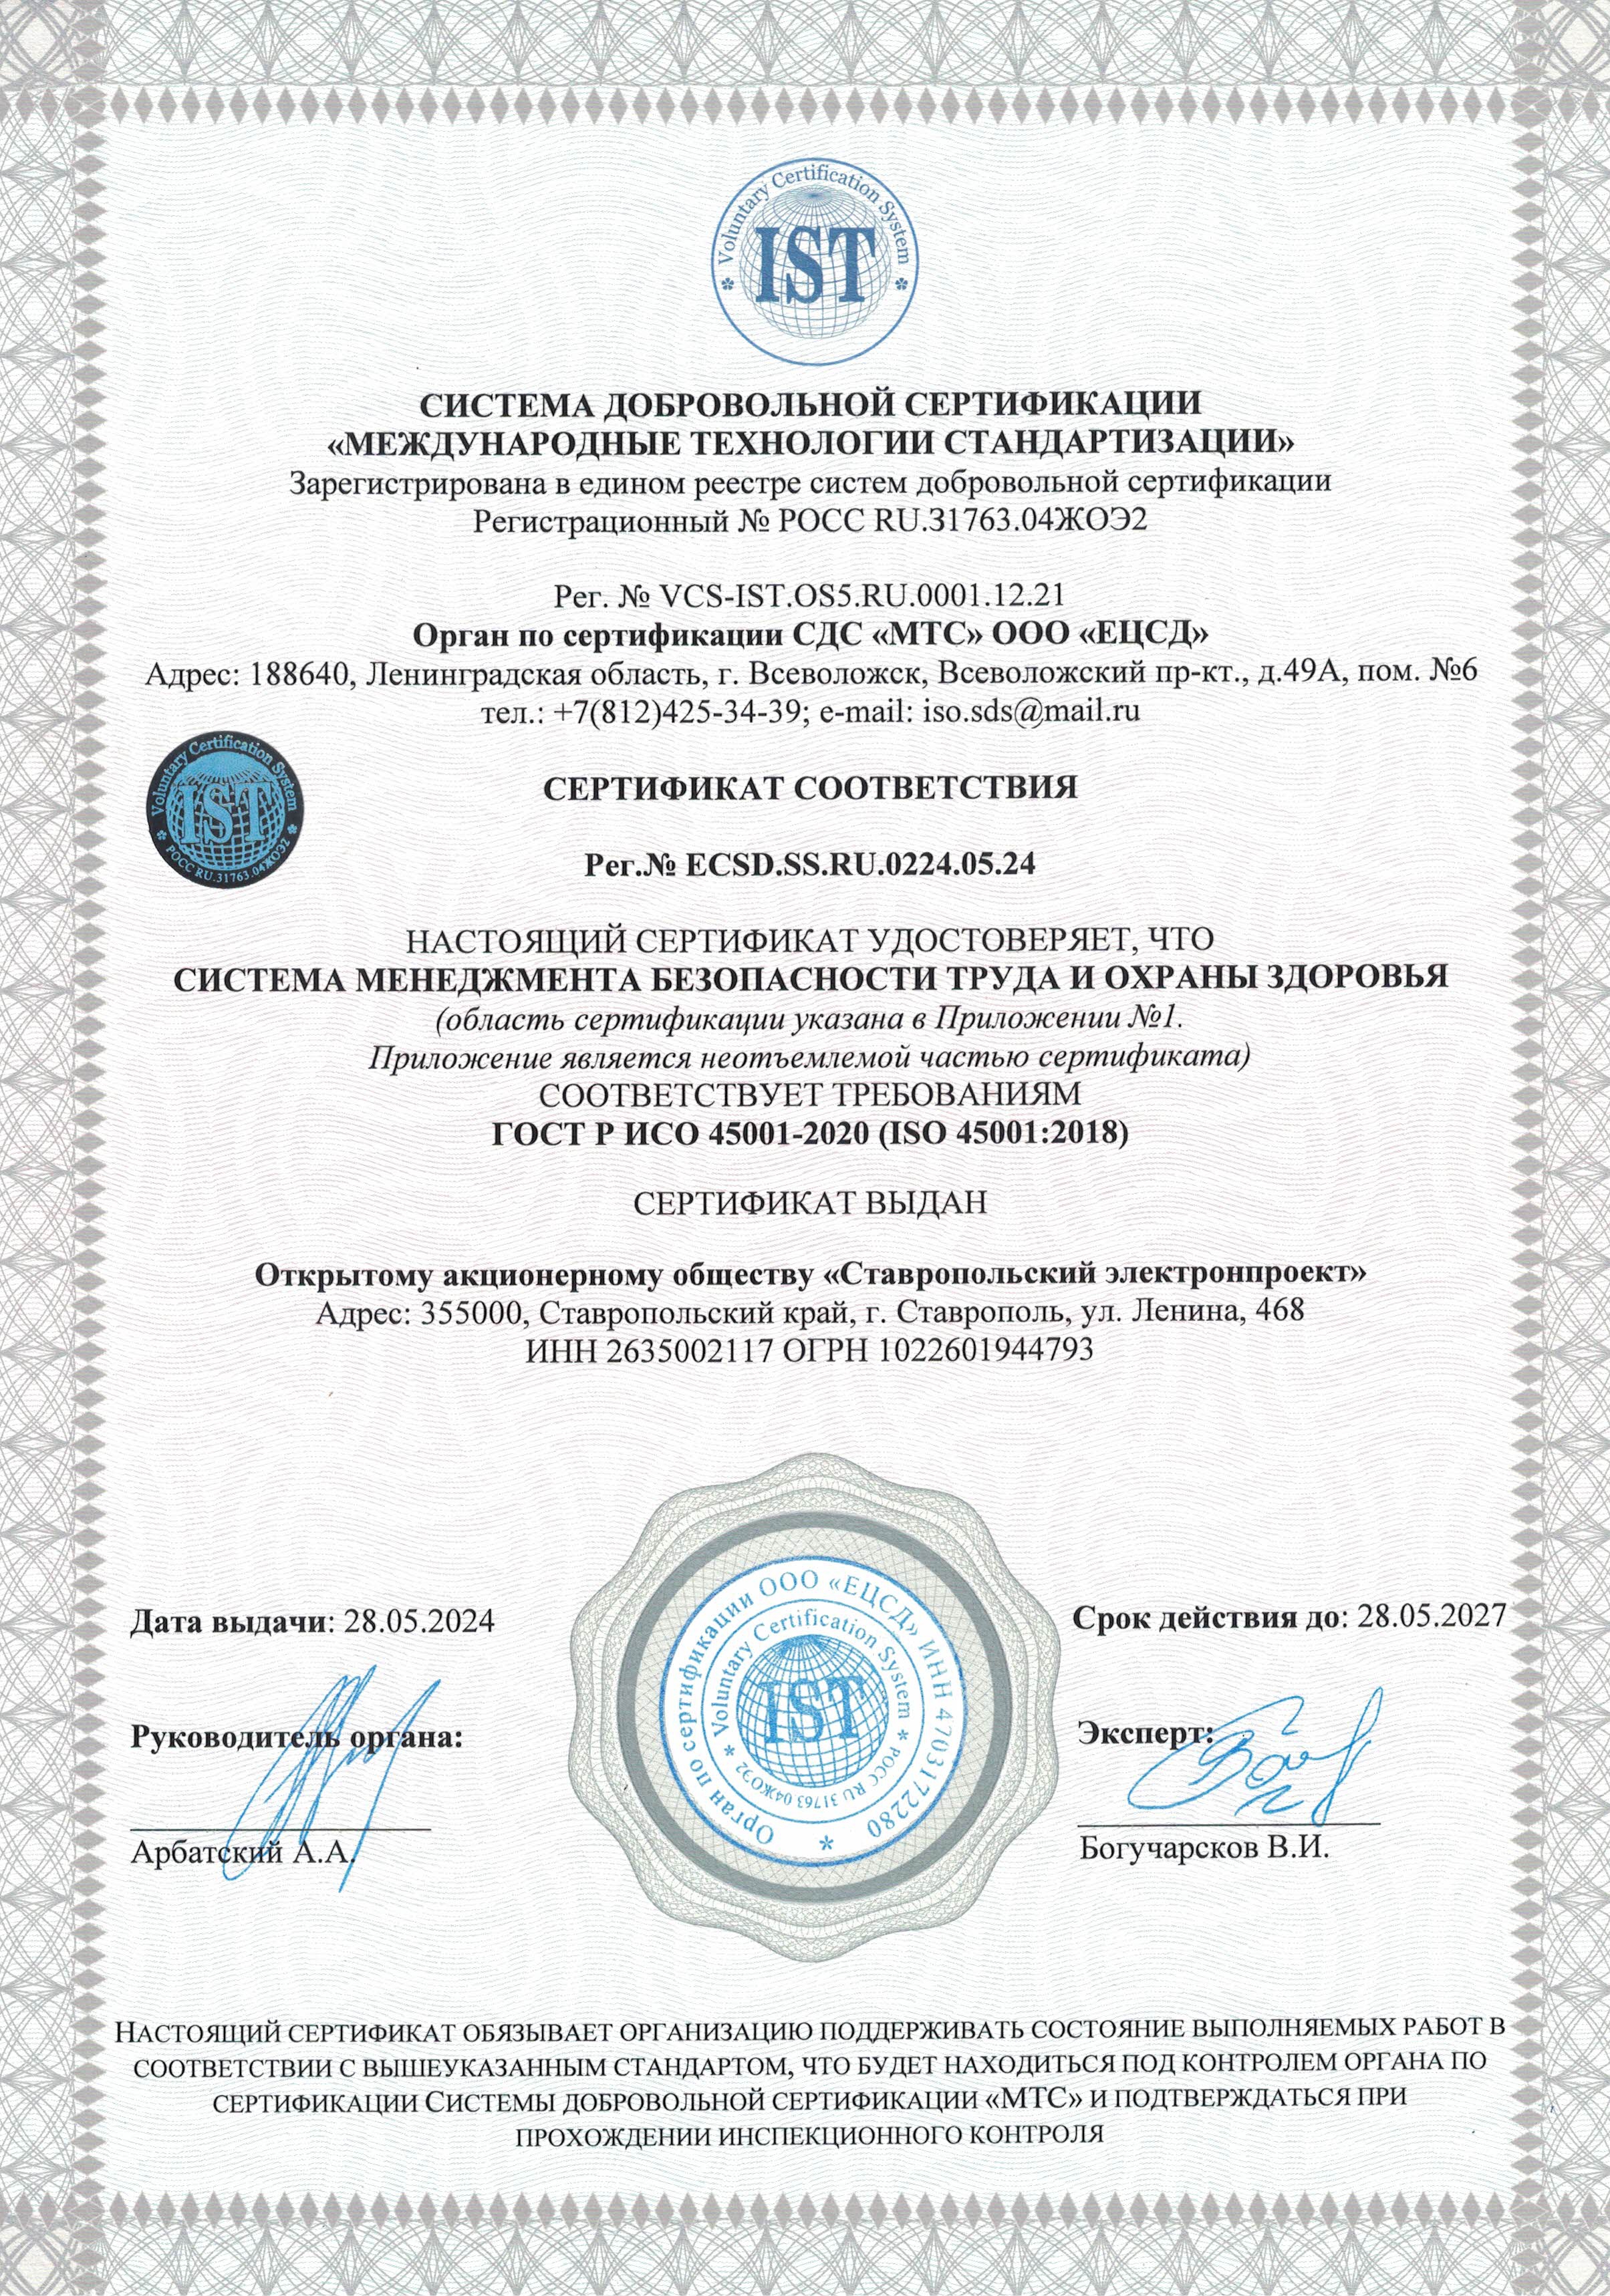 Сертификат ГОСТ Р ИСО 45001-2020